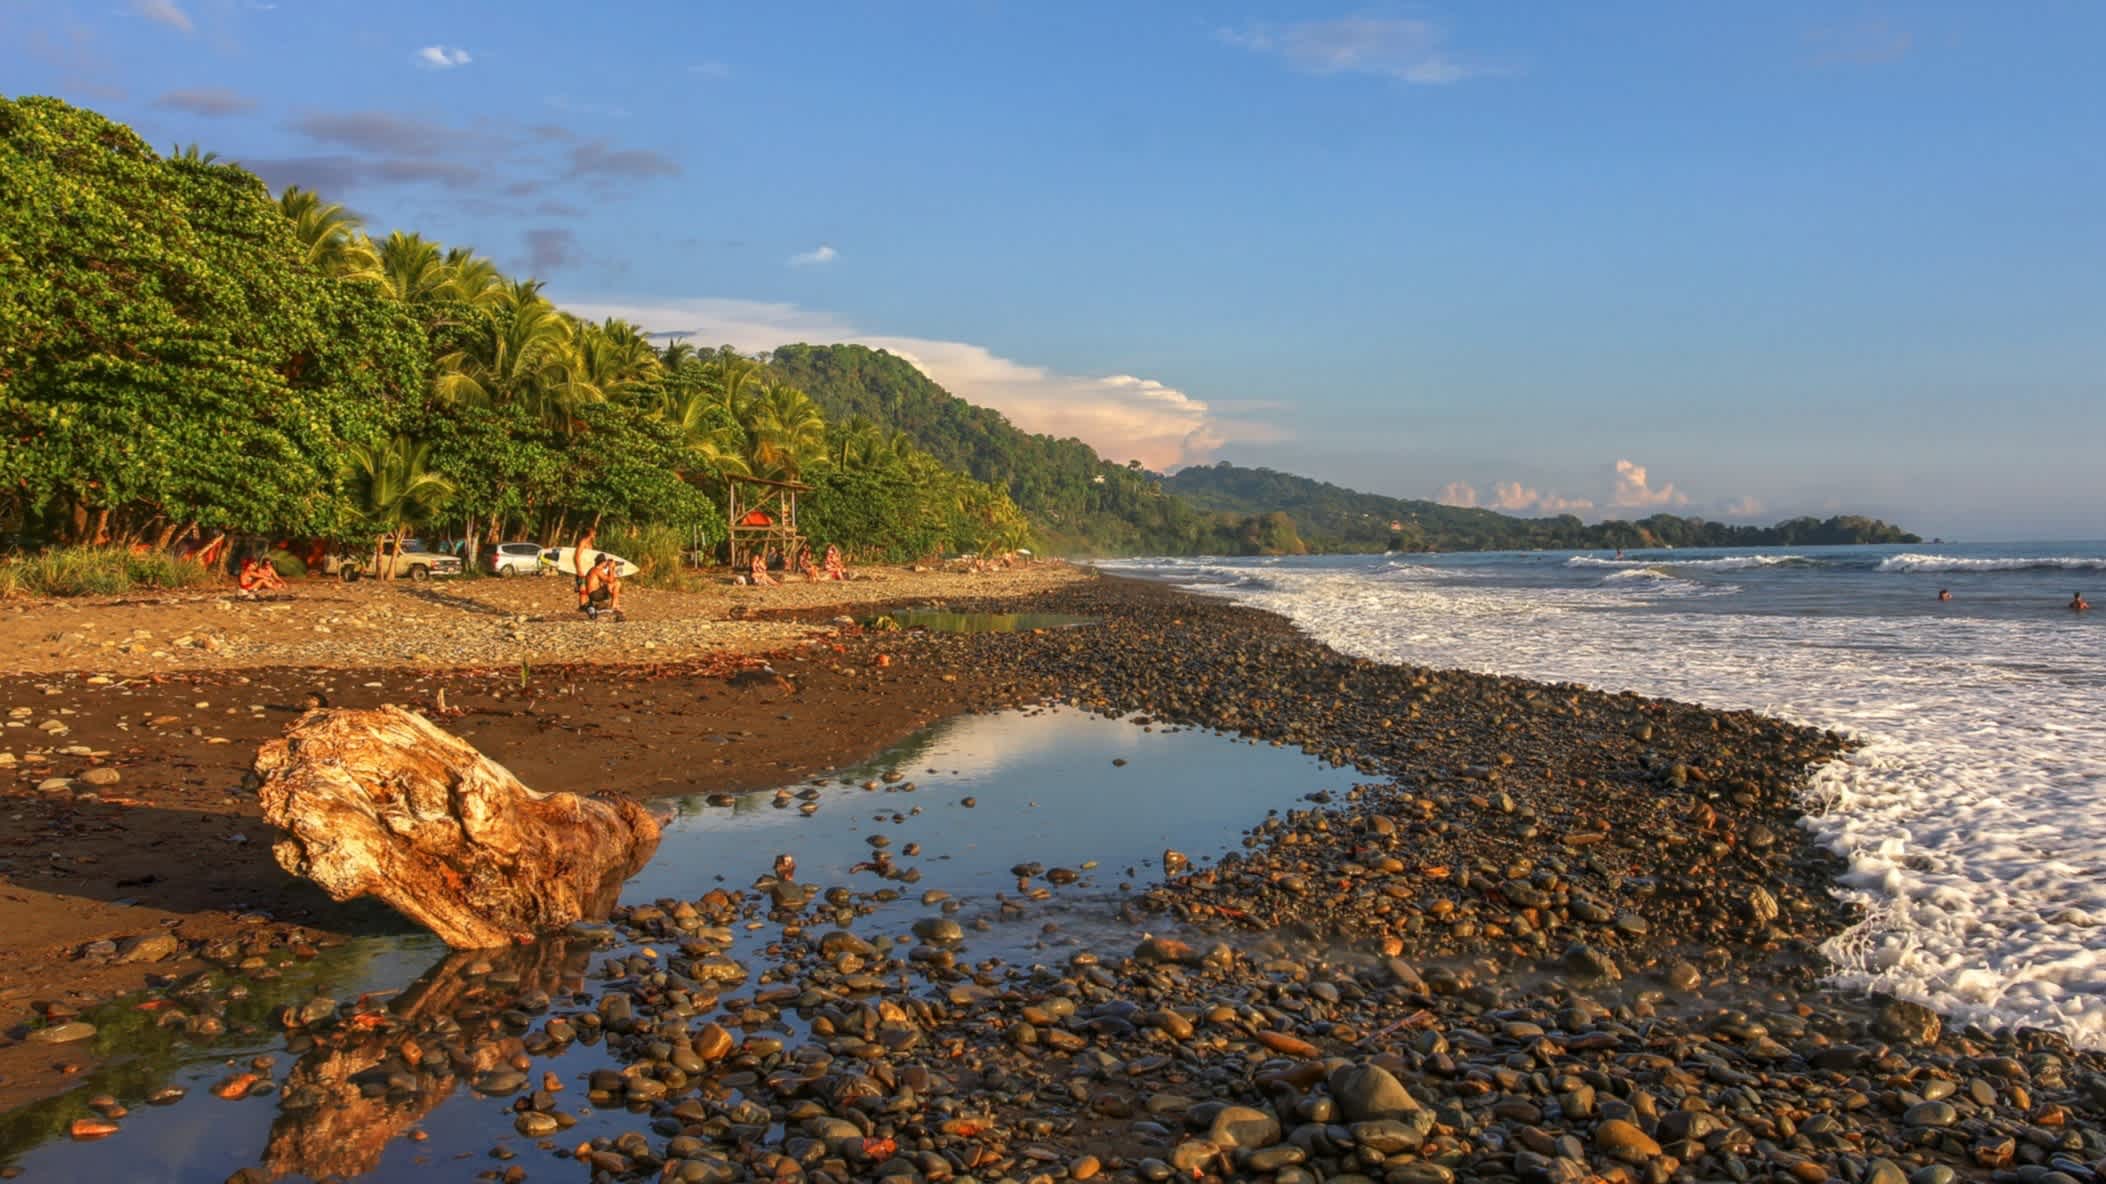 La Playa Dominical au Costa Rica est une destination pour les surfeurs.
